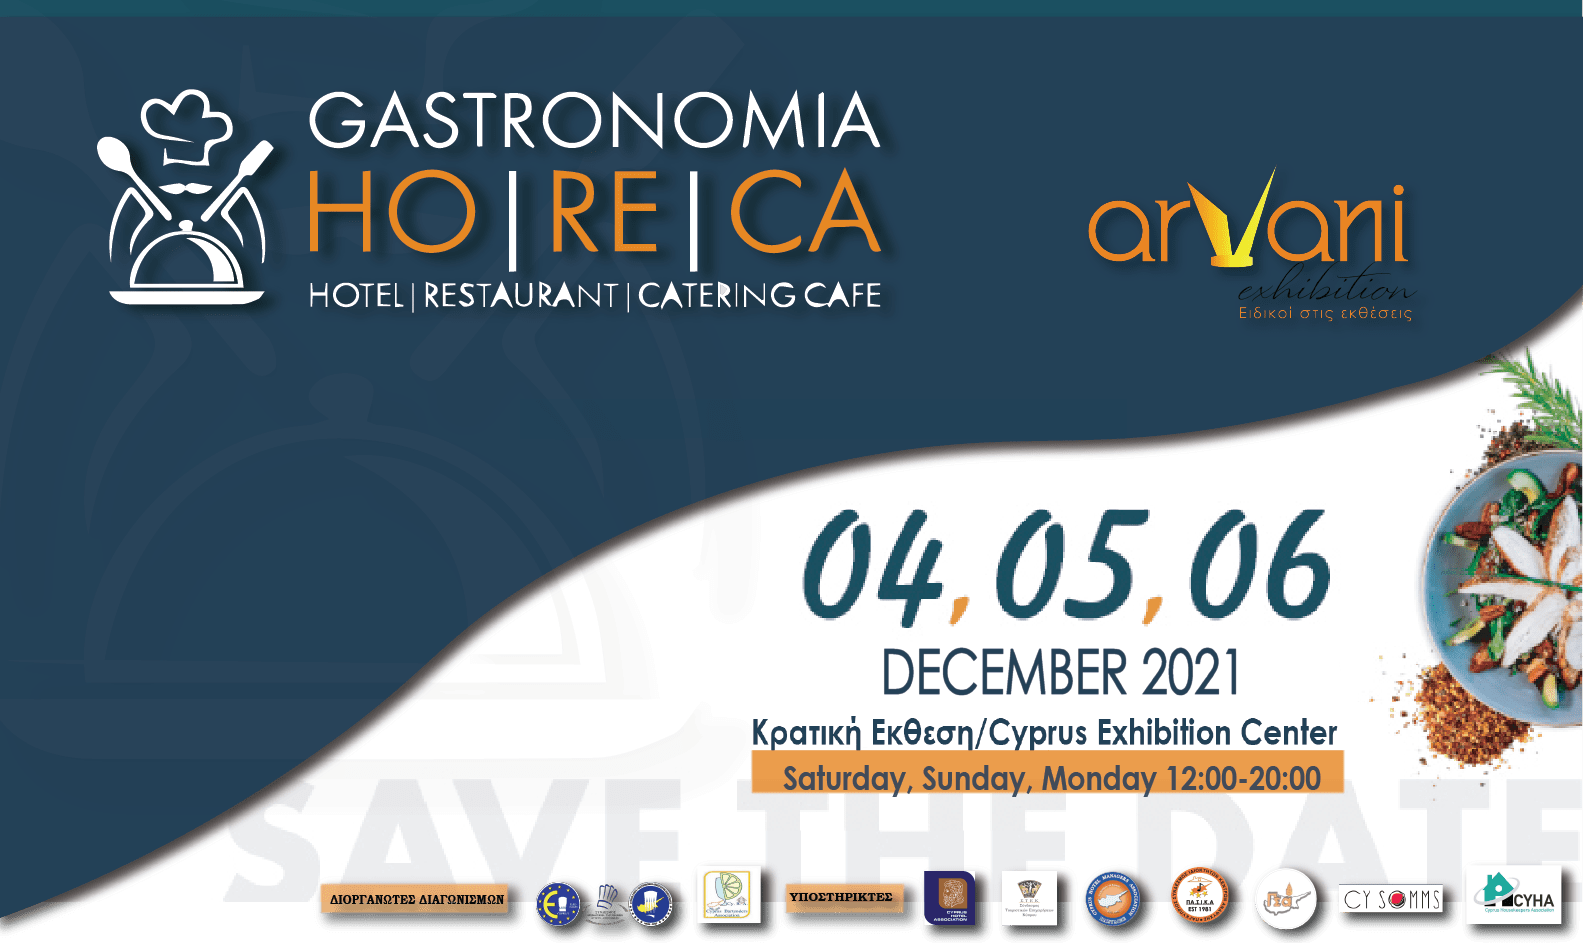 GASTRONOMIA- HORECA  Η Μεγαλύτερη Παγκύπρια Έκθεση που καλύπτει τις ανάγκες  όλων των επαγγελματιών του Επισιτιστικού , Ξενοδοχειακού και Τουριστικού κλάδου κοντά σας για  21η χρονιά.